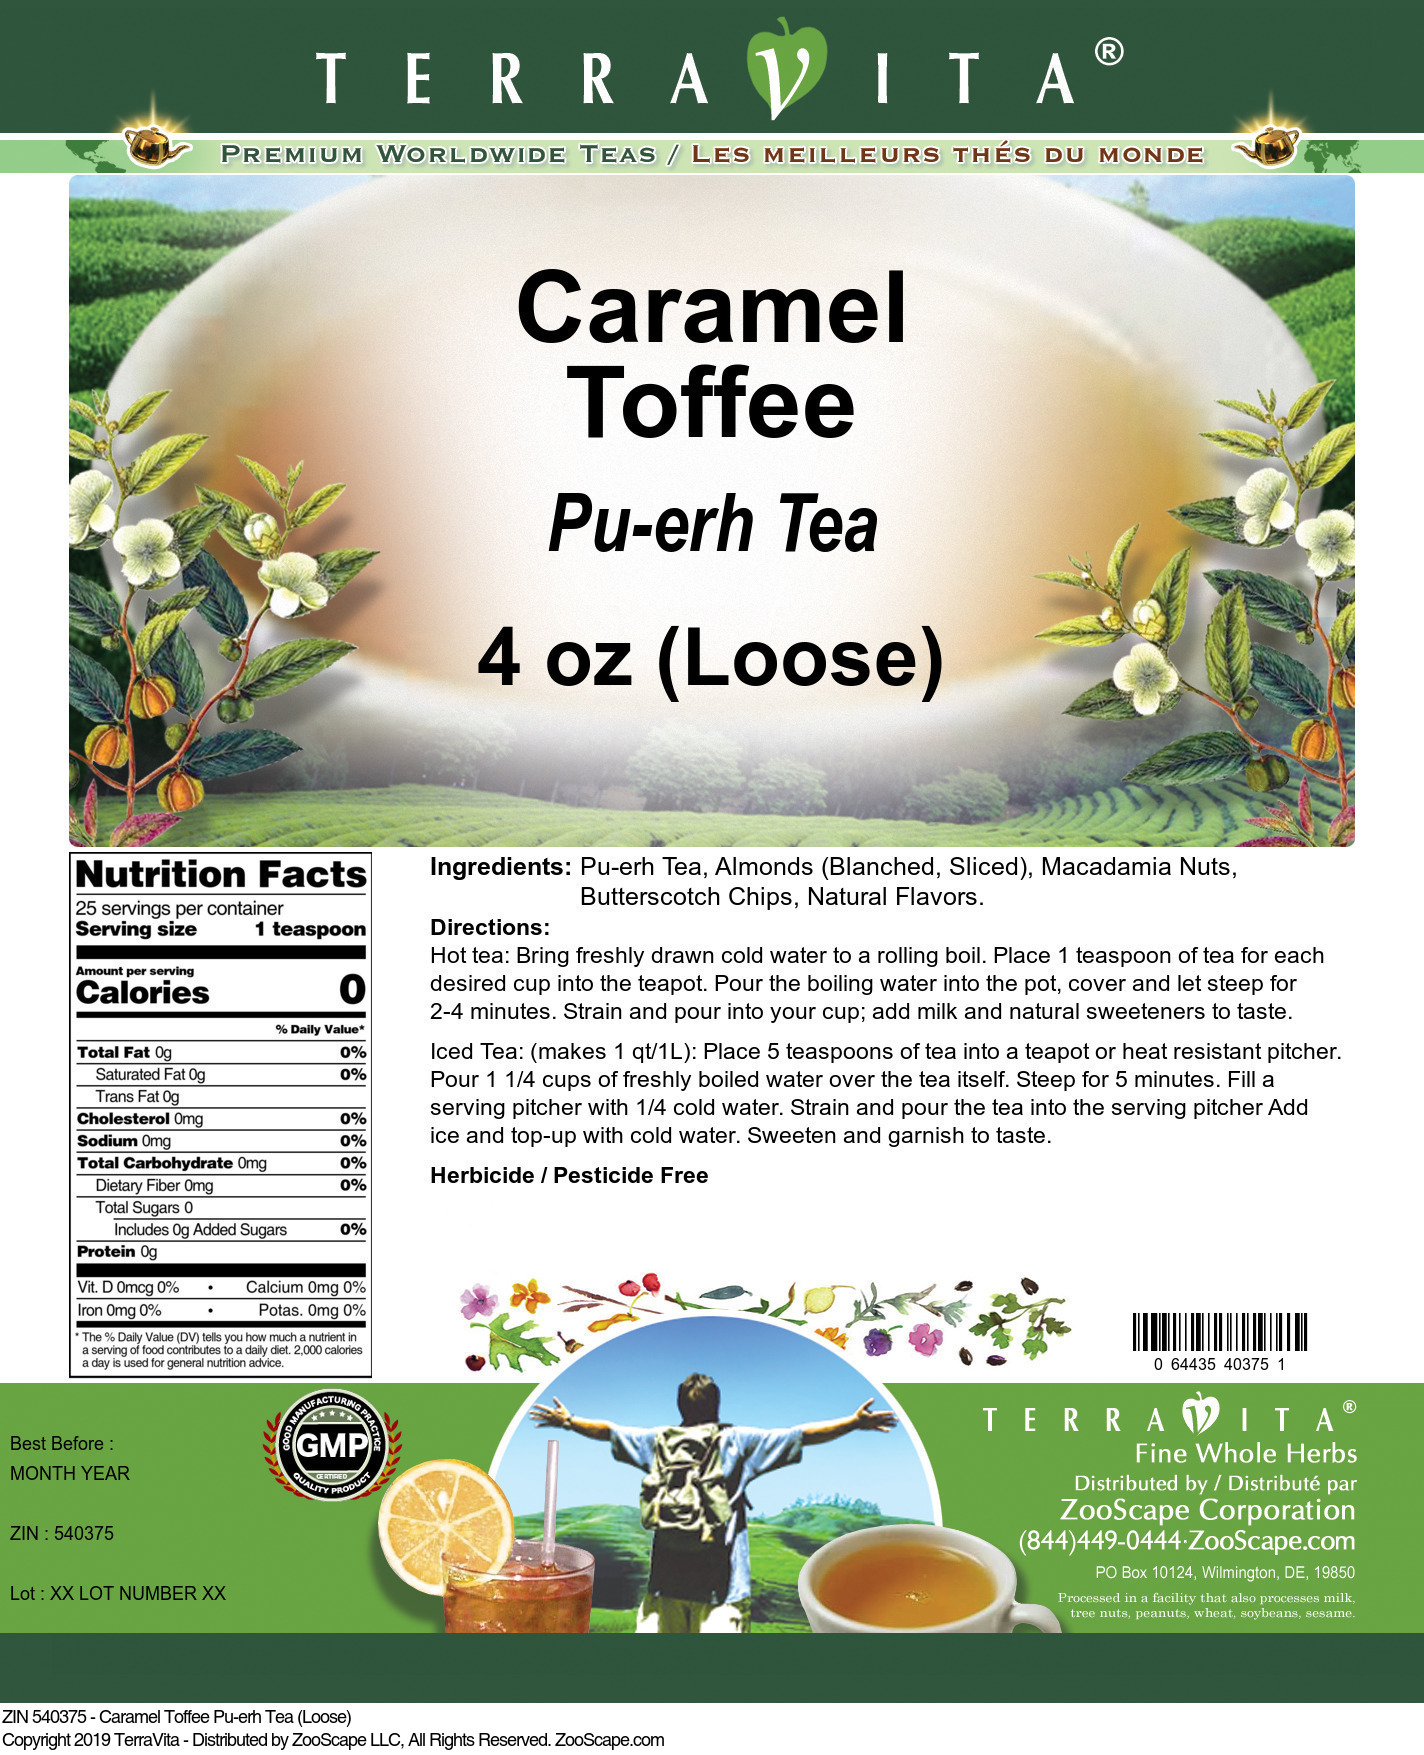 Caramel Toffee Pu-erh Tea (Loose) - Label